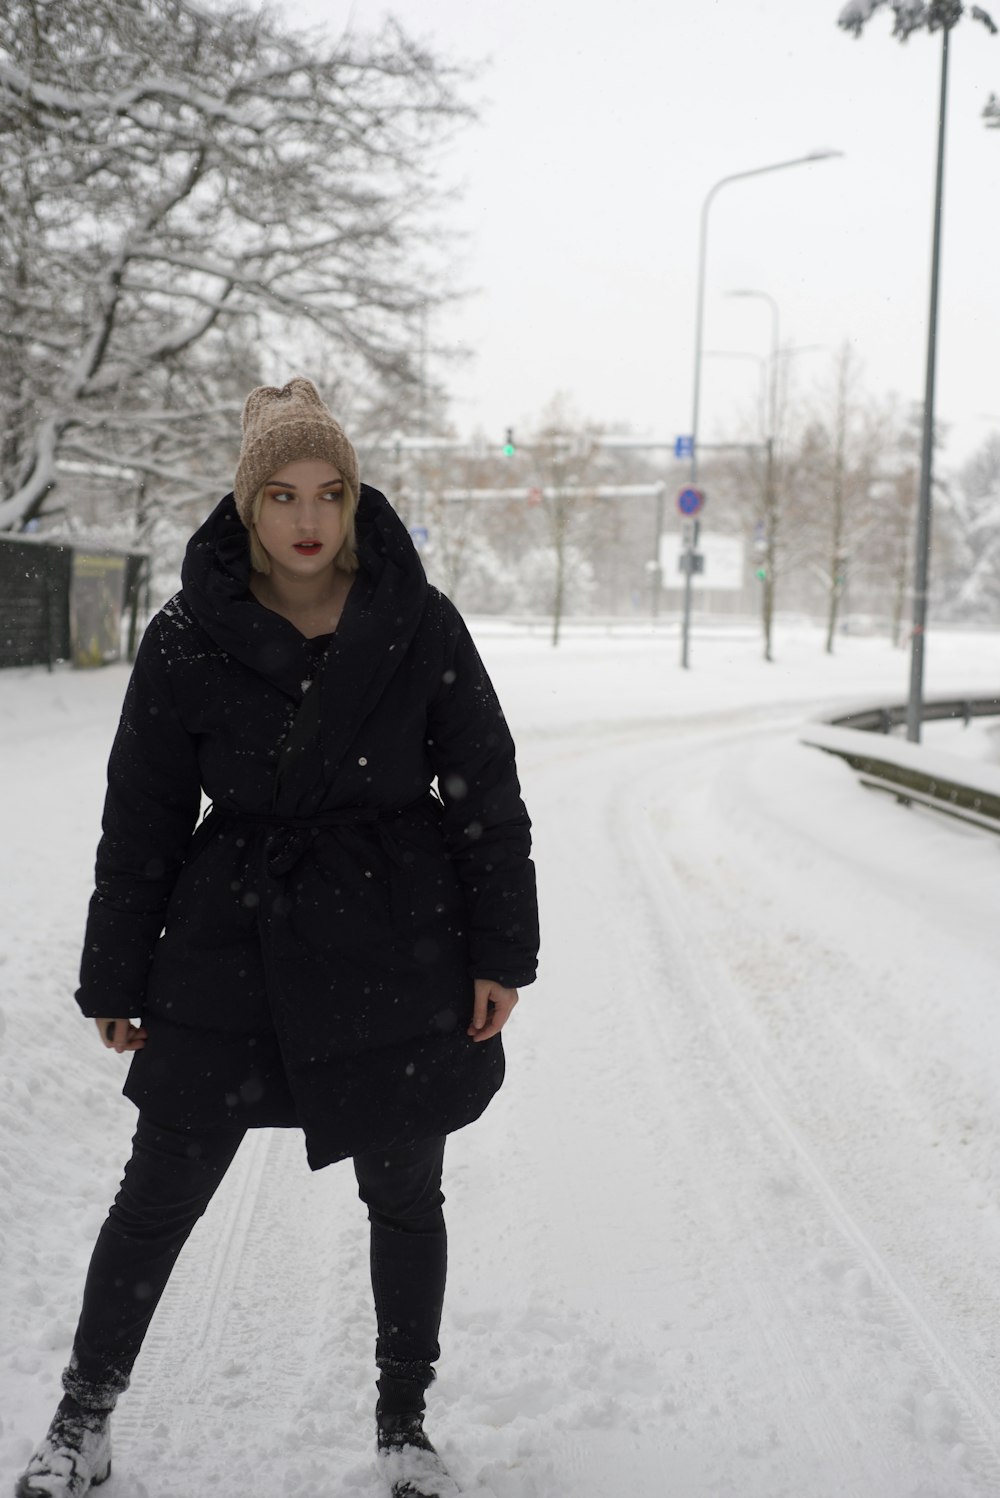 Eine Frau, die im schwarzen Mantel im Schnee steht